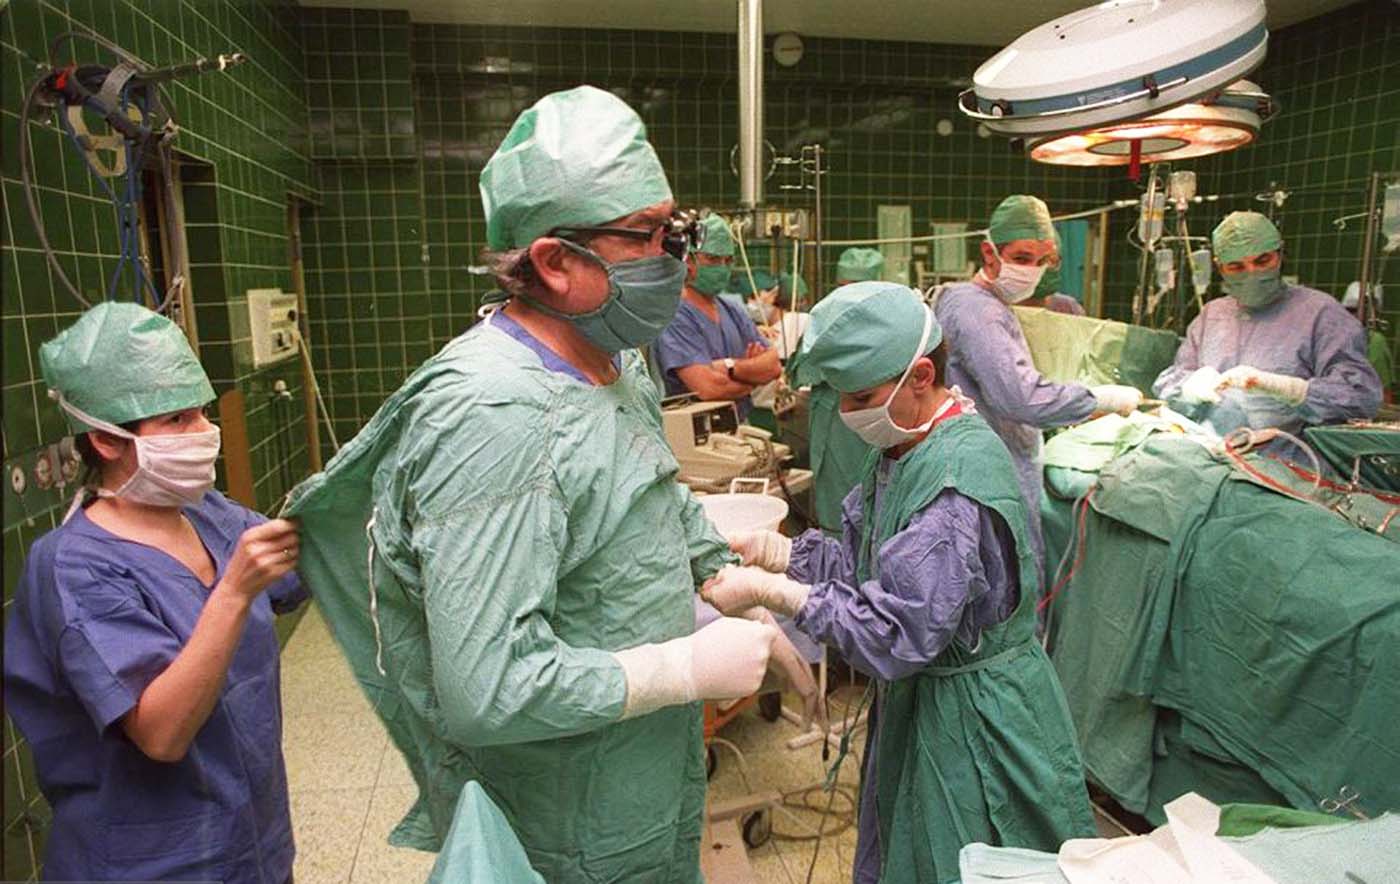 Le Dr Zbigniew Religa surveille les signes vitaux de son patient après une transplantation cardiaque de 23 heures, 1987